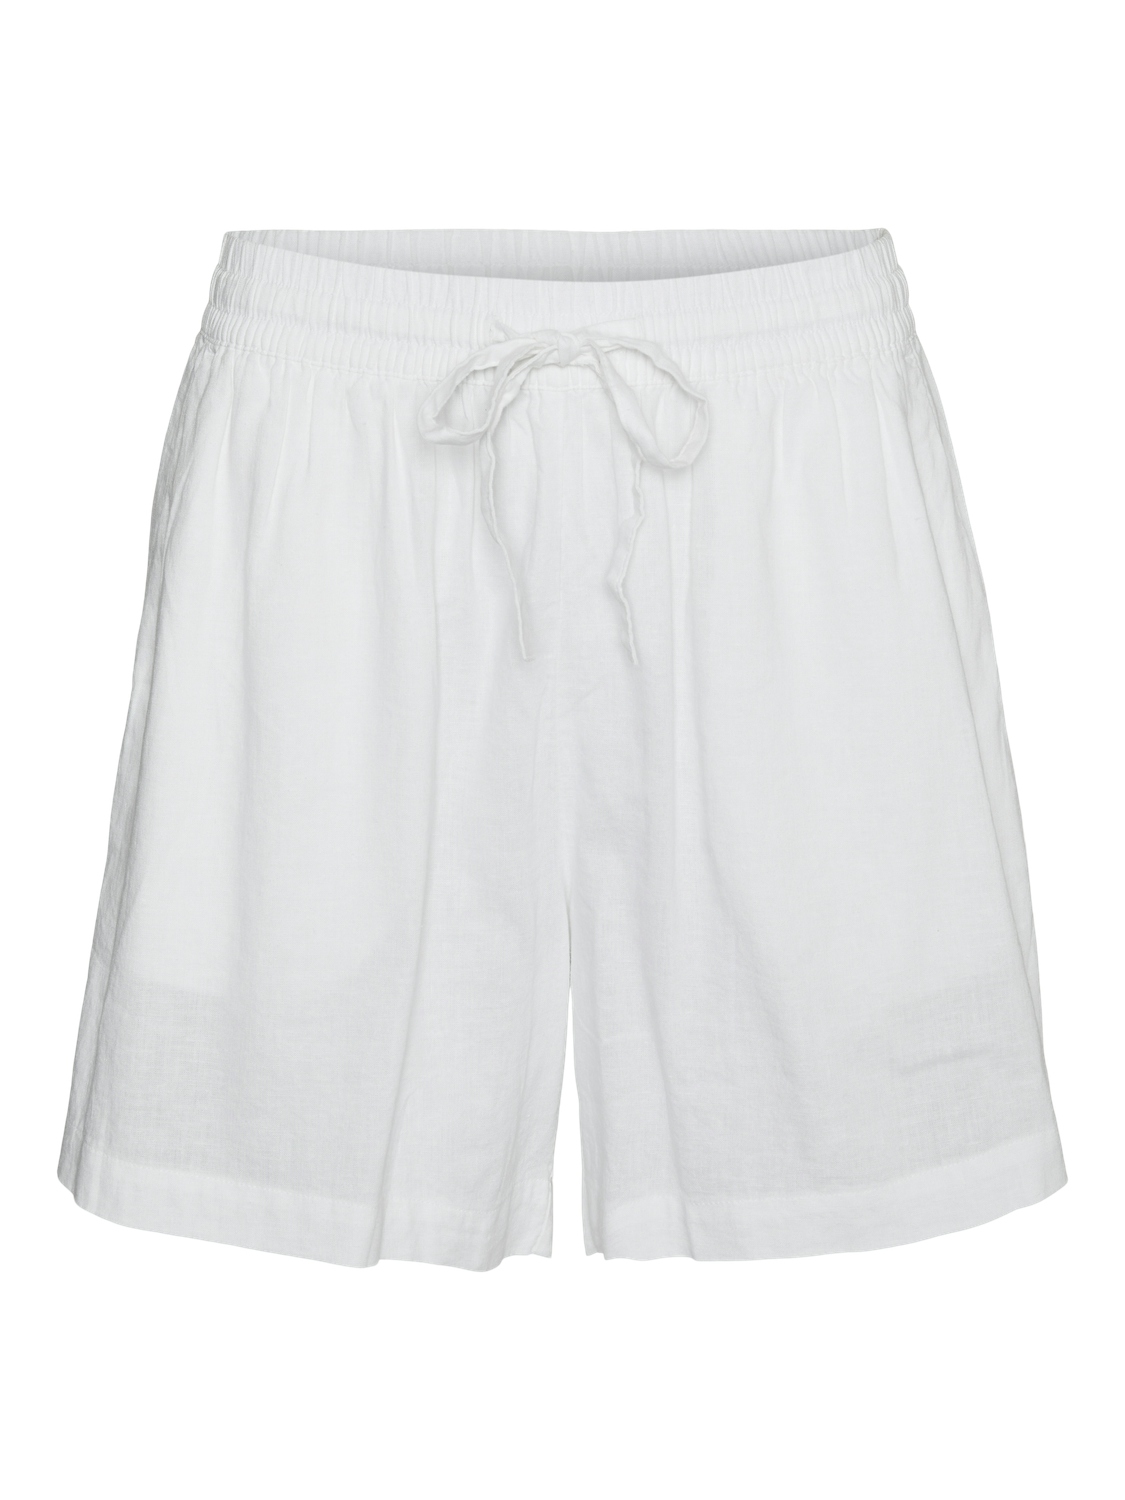 VMLINN shorts White